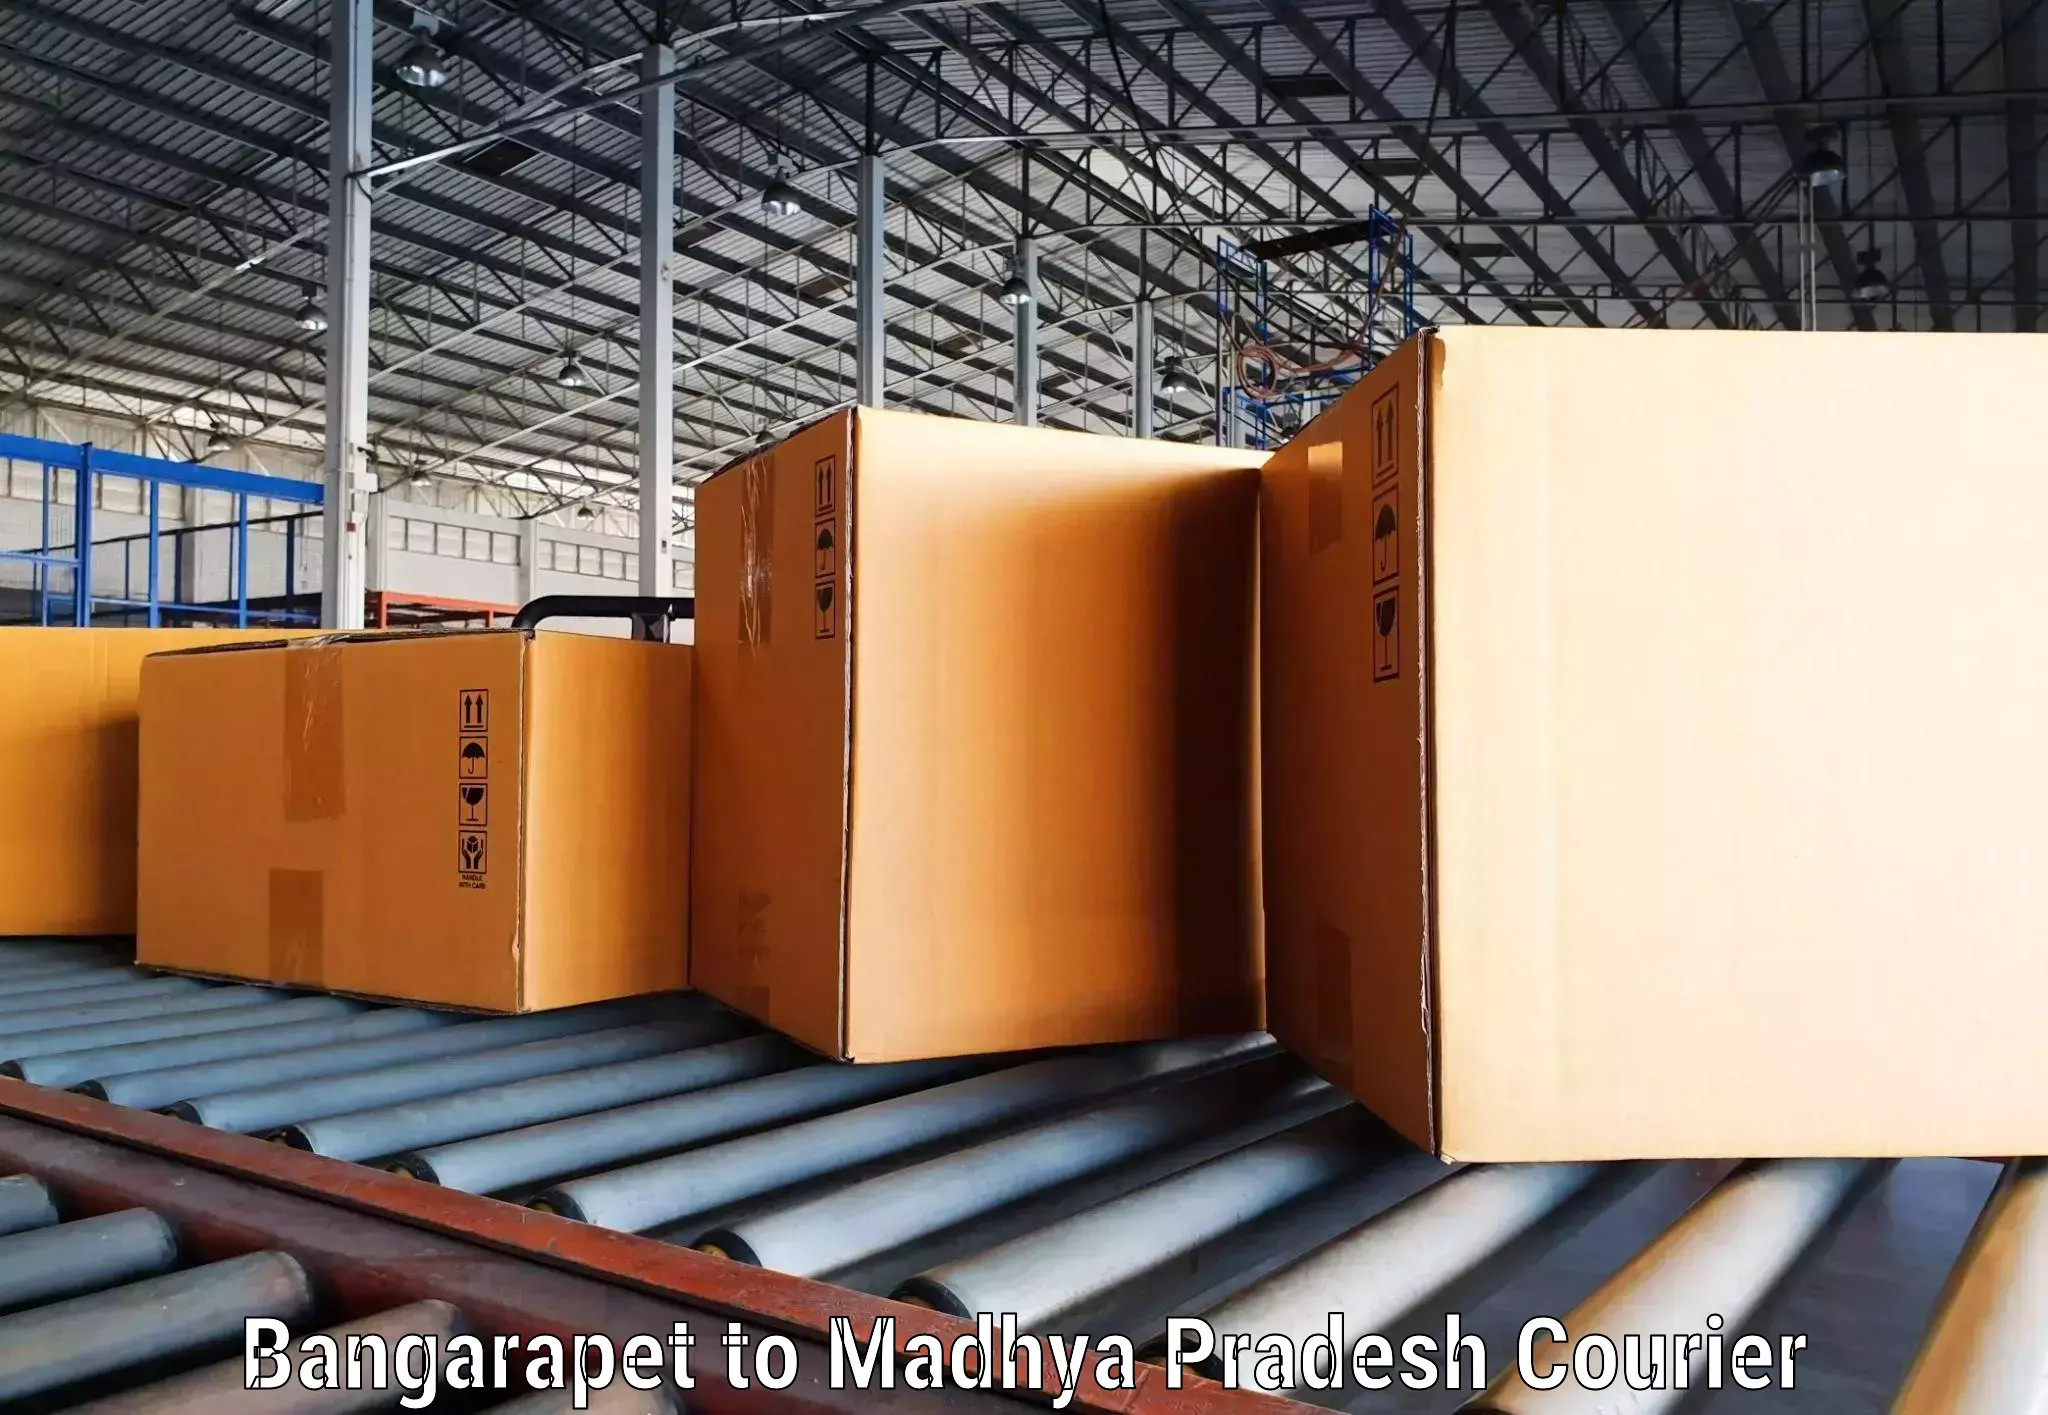 Customized shipping options Bangarapet to Indore